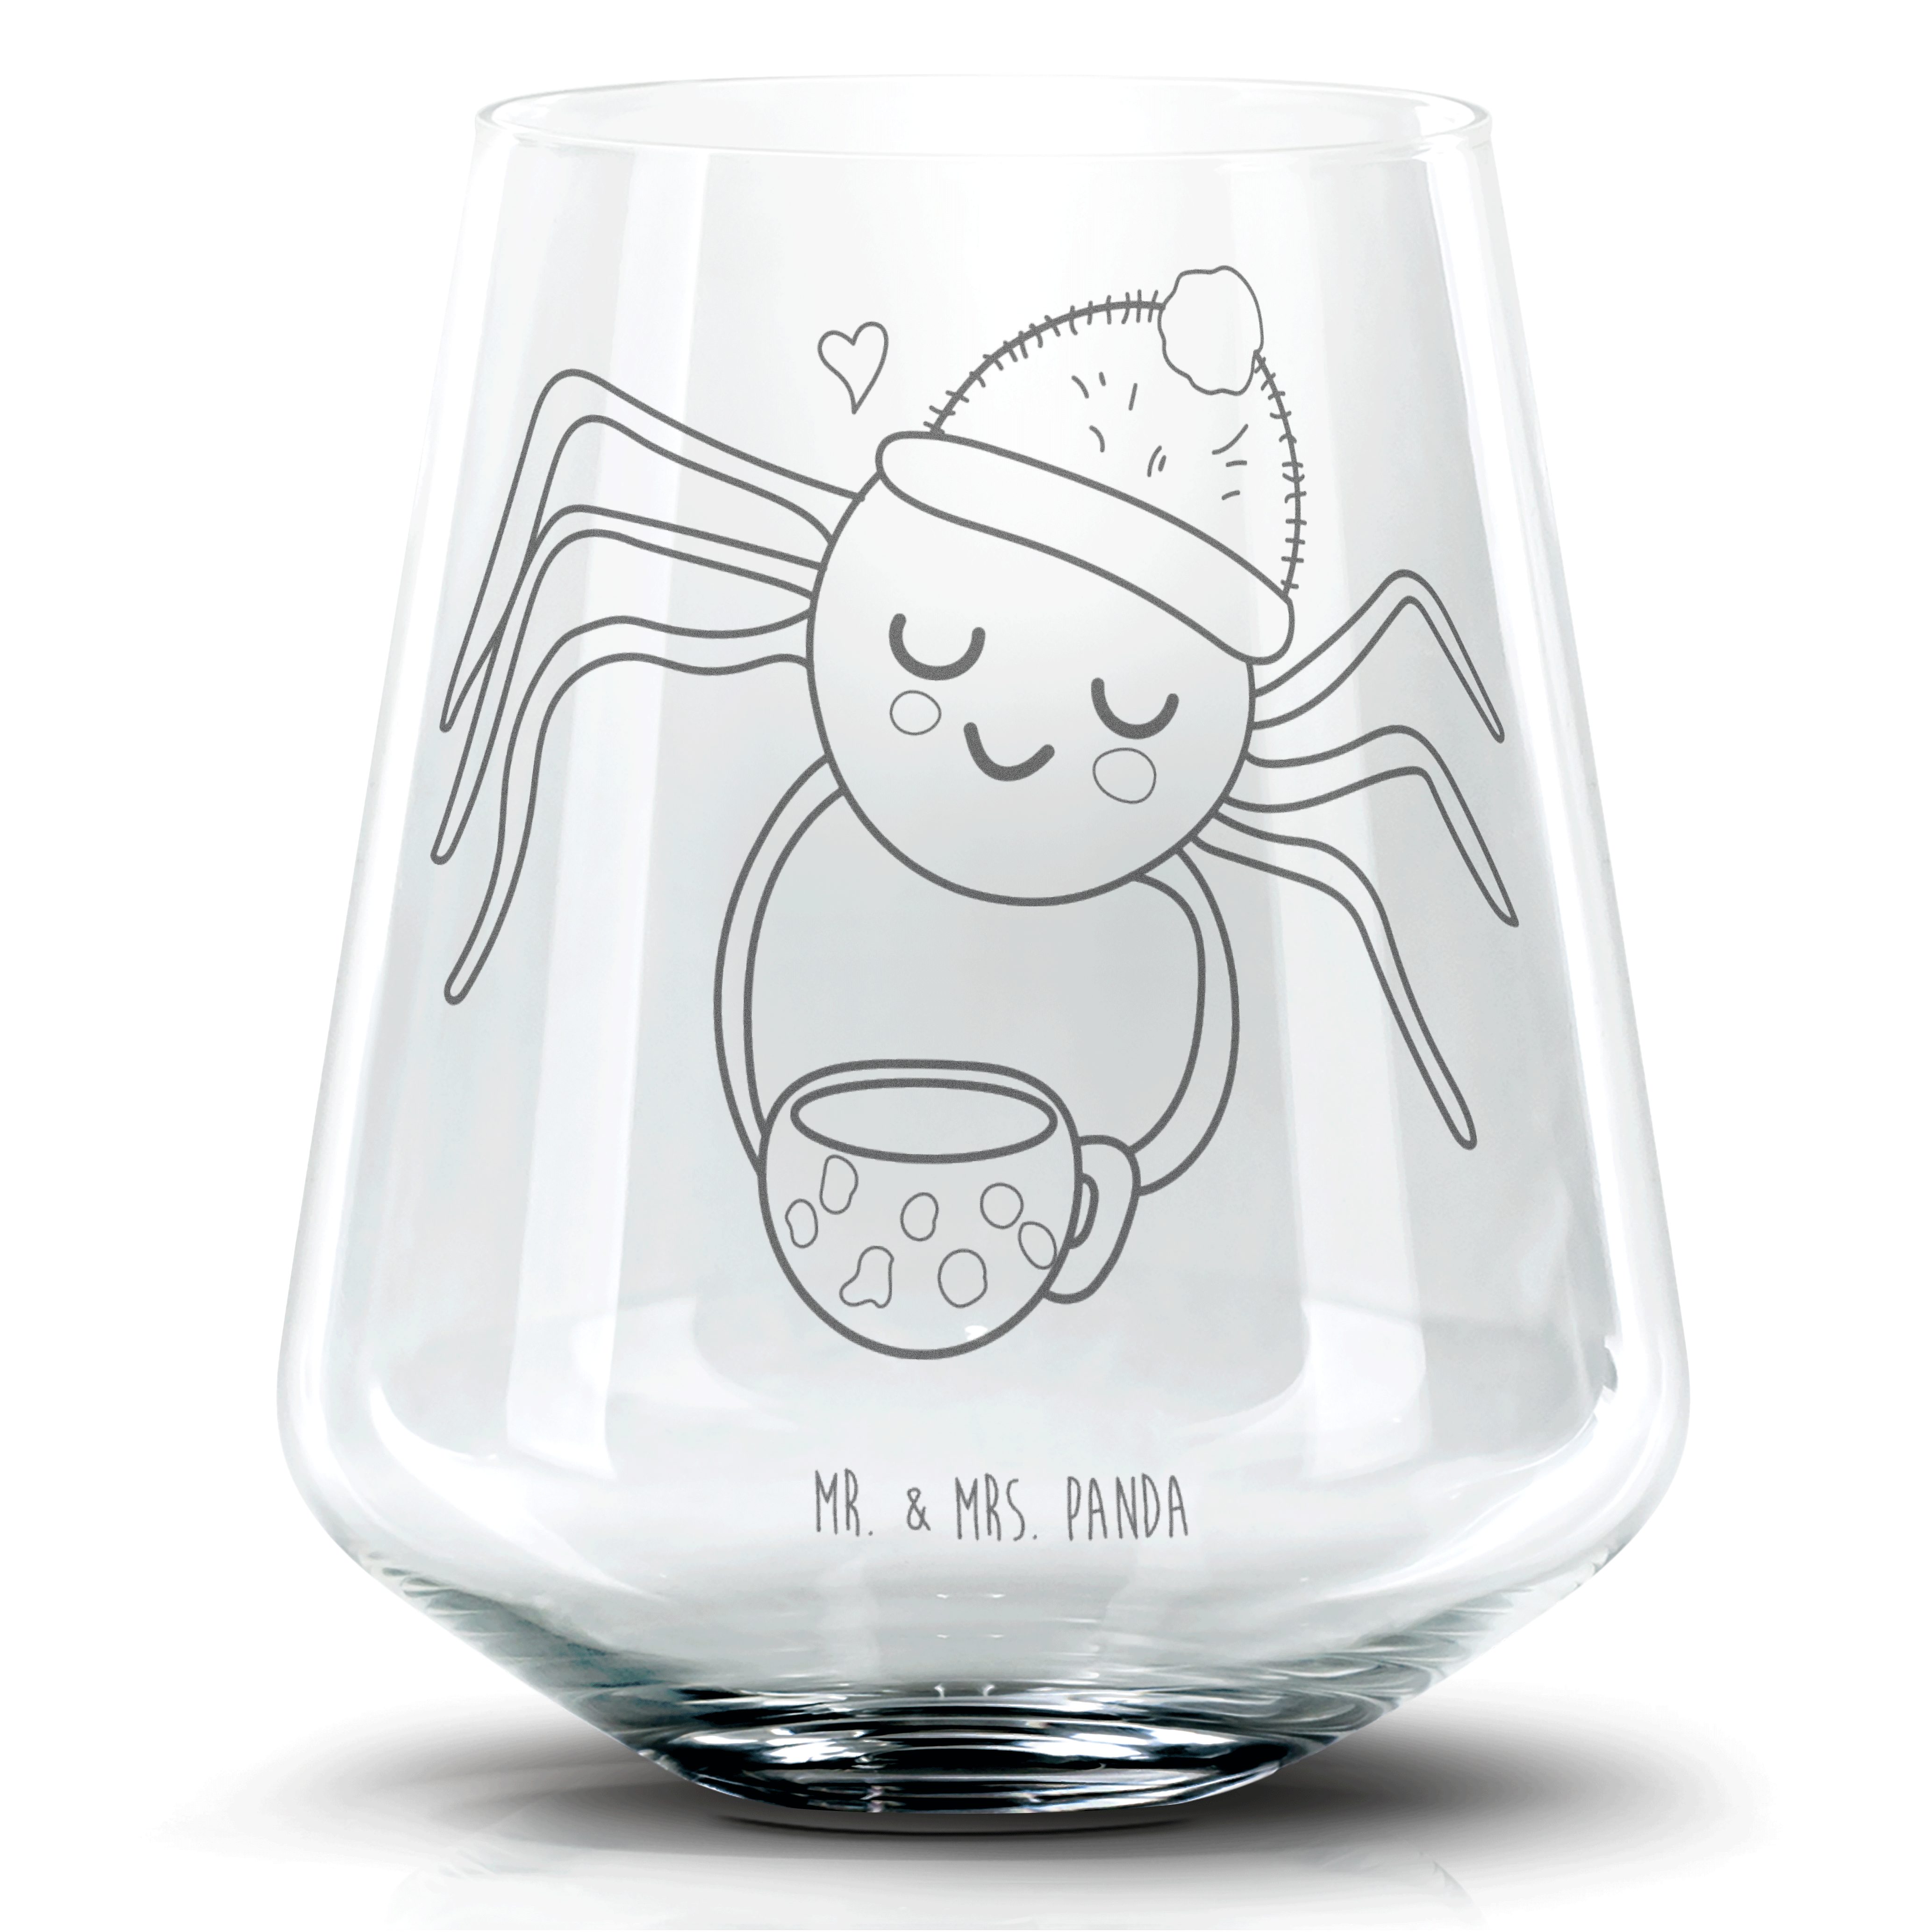 Mr. & Mrs. Panda Cocktailglas Spinne Agathe Kaffee - Transparent - Geschenk, Cocktail Glas mit Sprü, Premium Glas, Personalisierbar